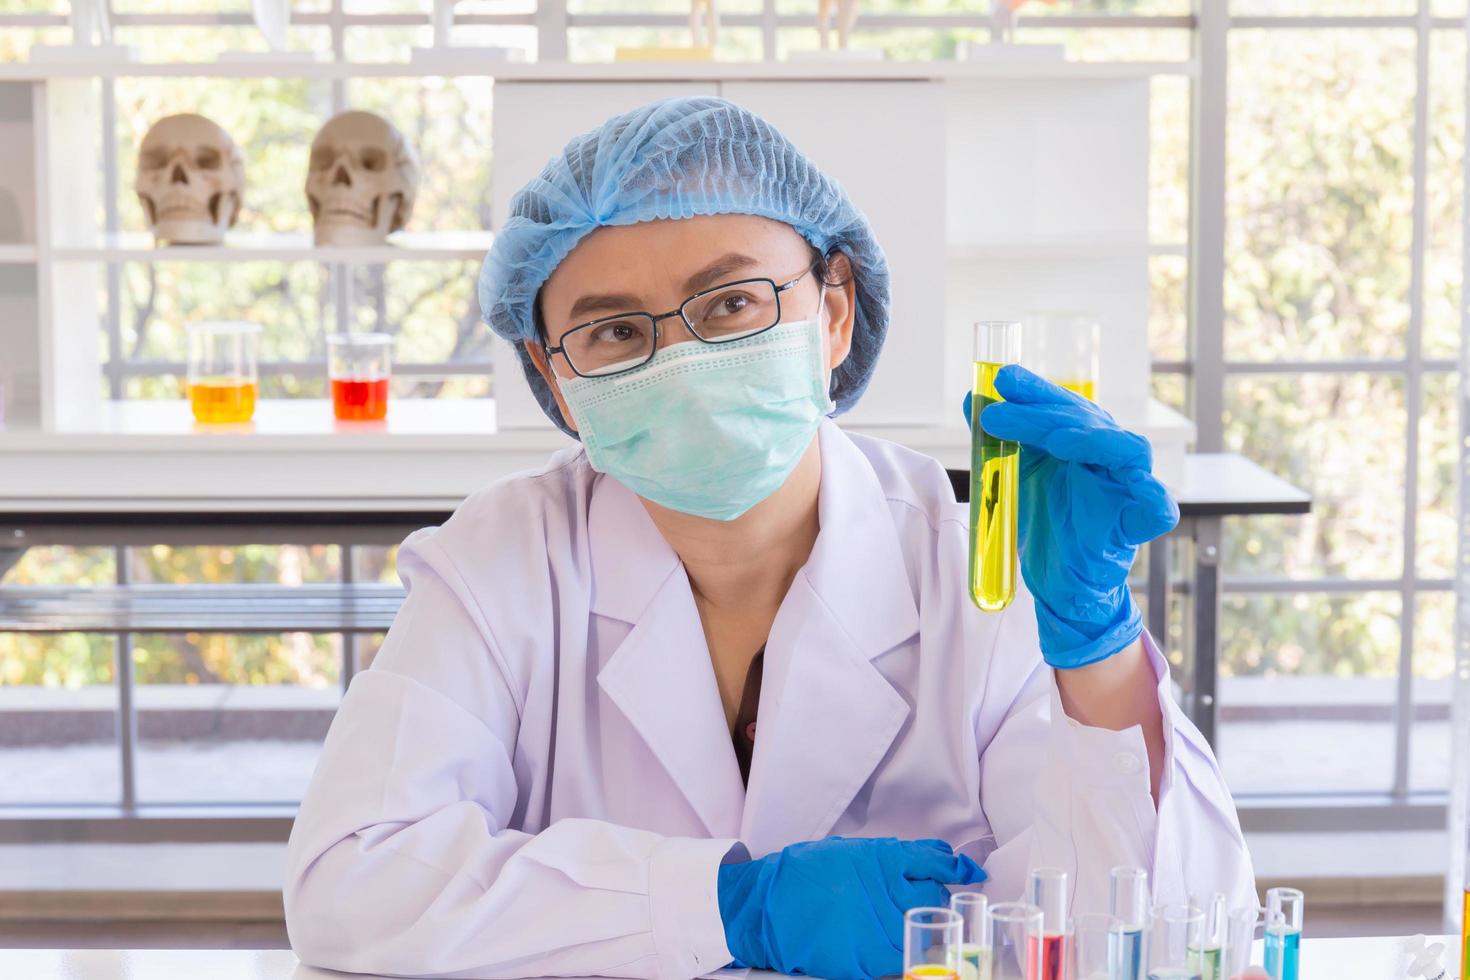 Eine asiatische Wissenschaftlerin erforscht in einem Labor eine chemische Formel. foto